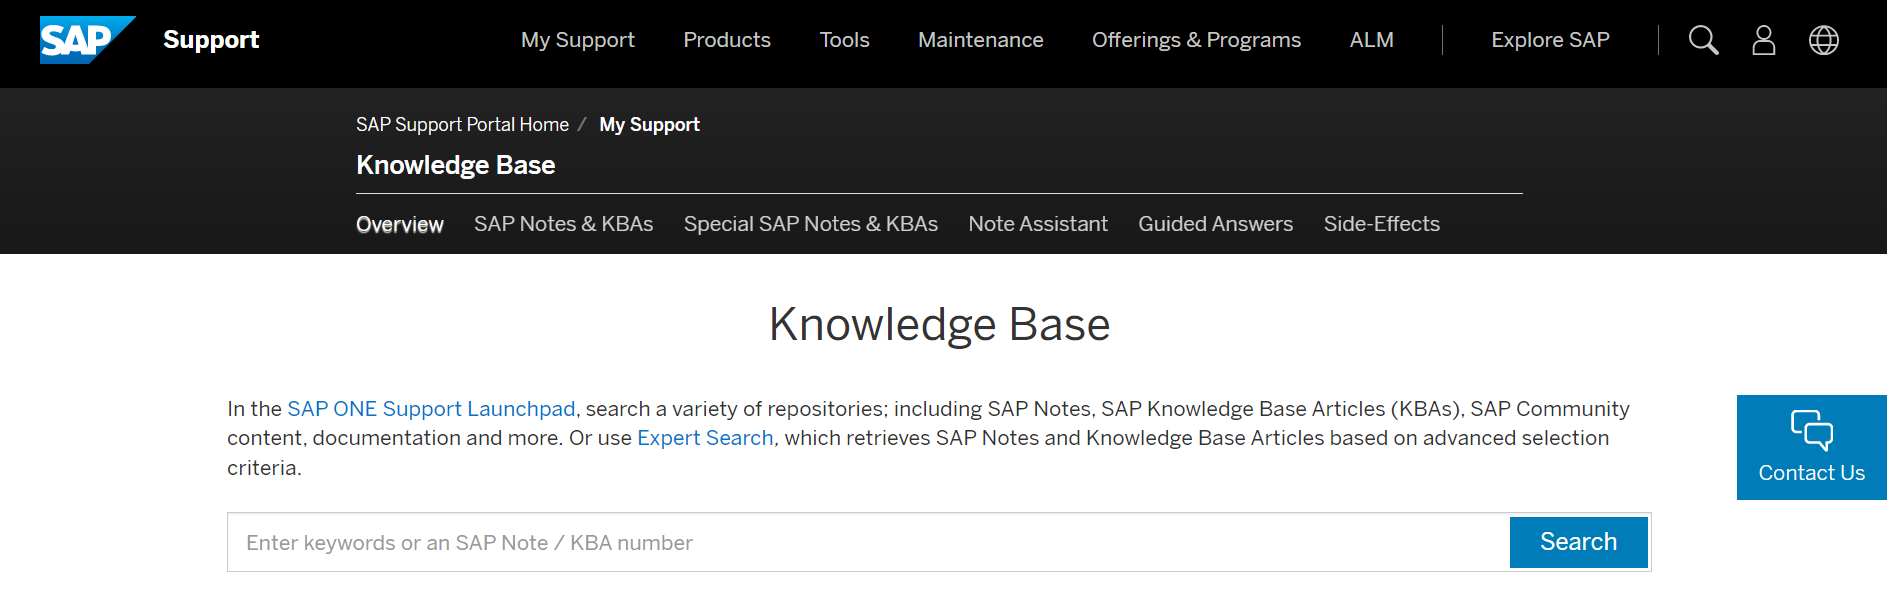 SAP Knowledge Base Snapshot